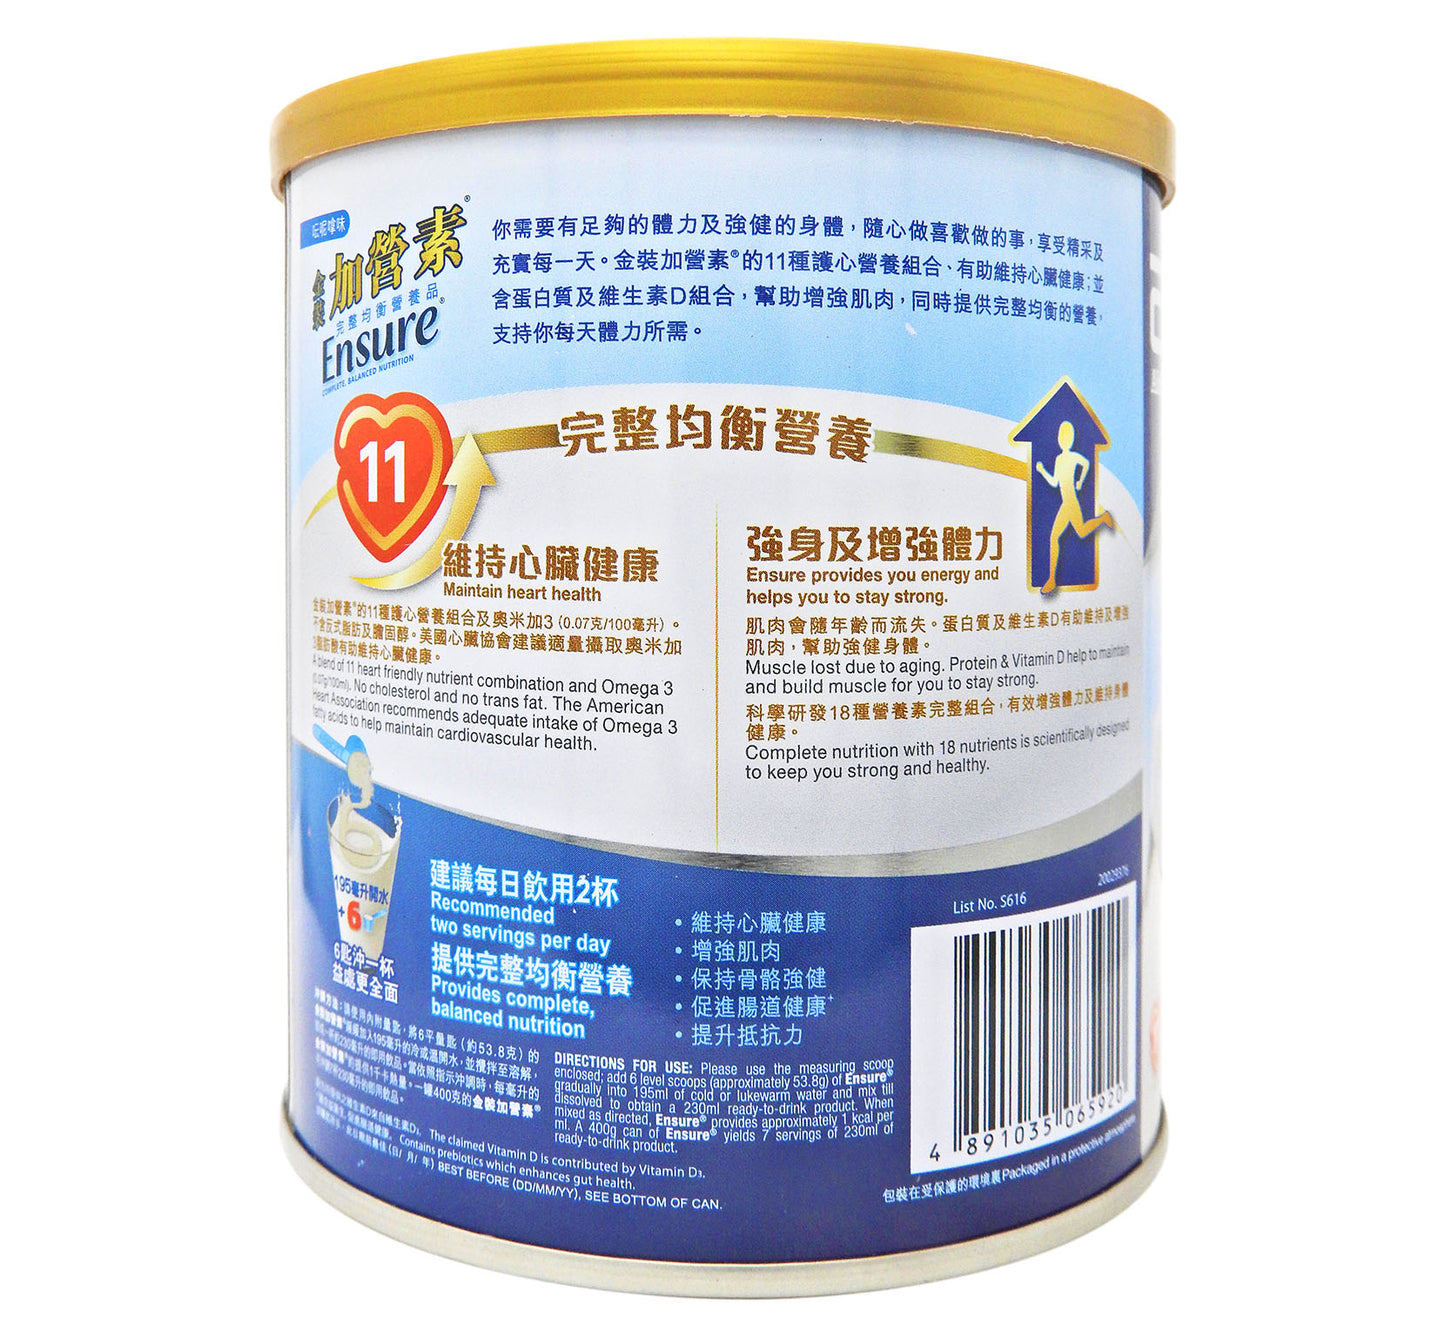 雅培 - Ensure 金裝加營素 [呍呢嗱味] 400g <香港行貨> #5614